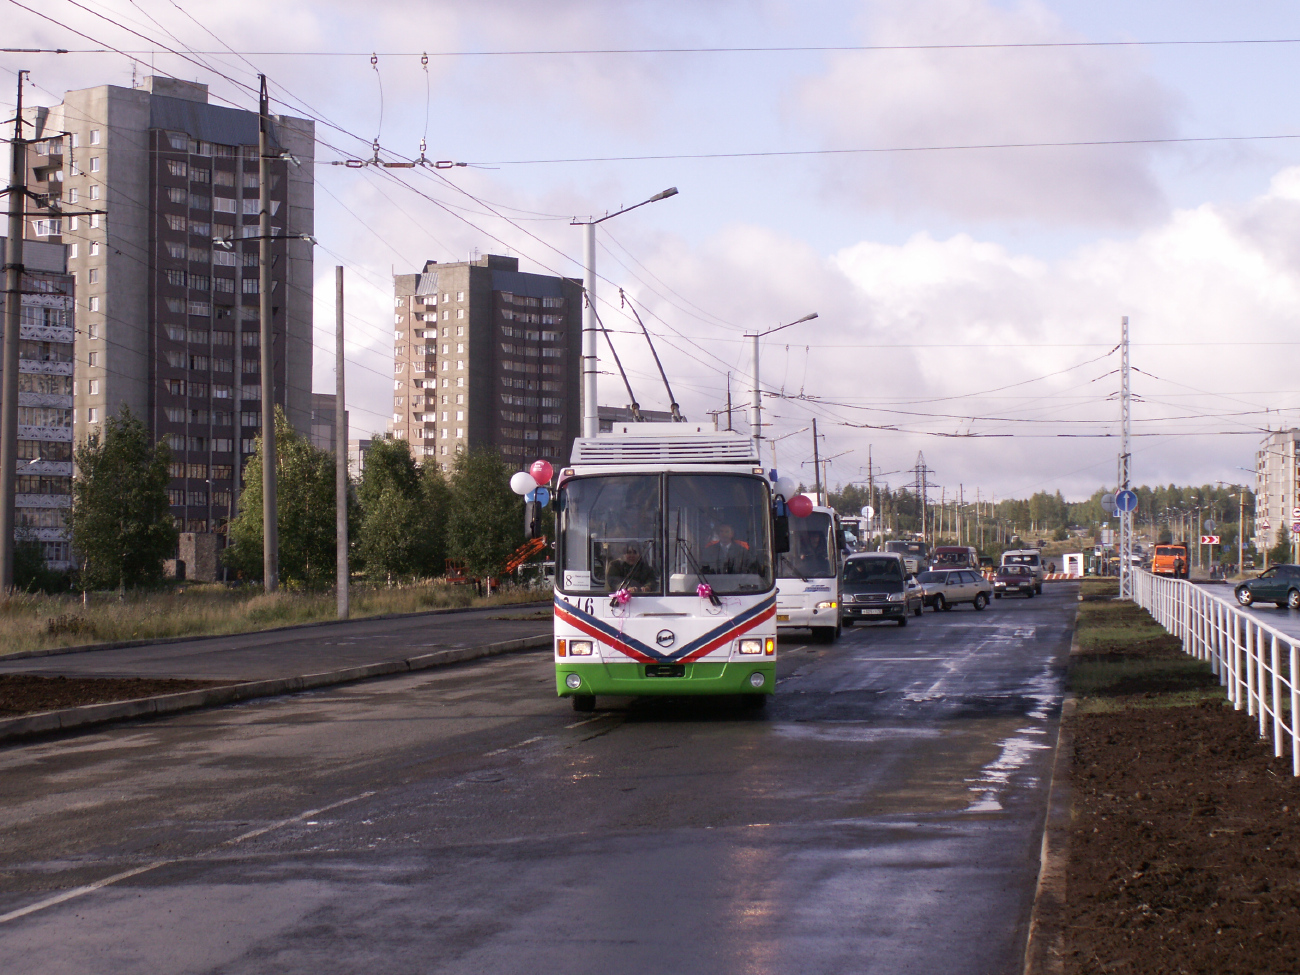 Петрозаводск, ПТ-5280.02 № 346; Петрозаводск — Открытие троллейбусной линии до Лососинского шоссе